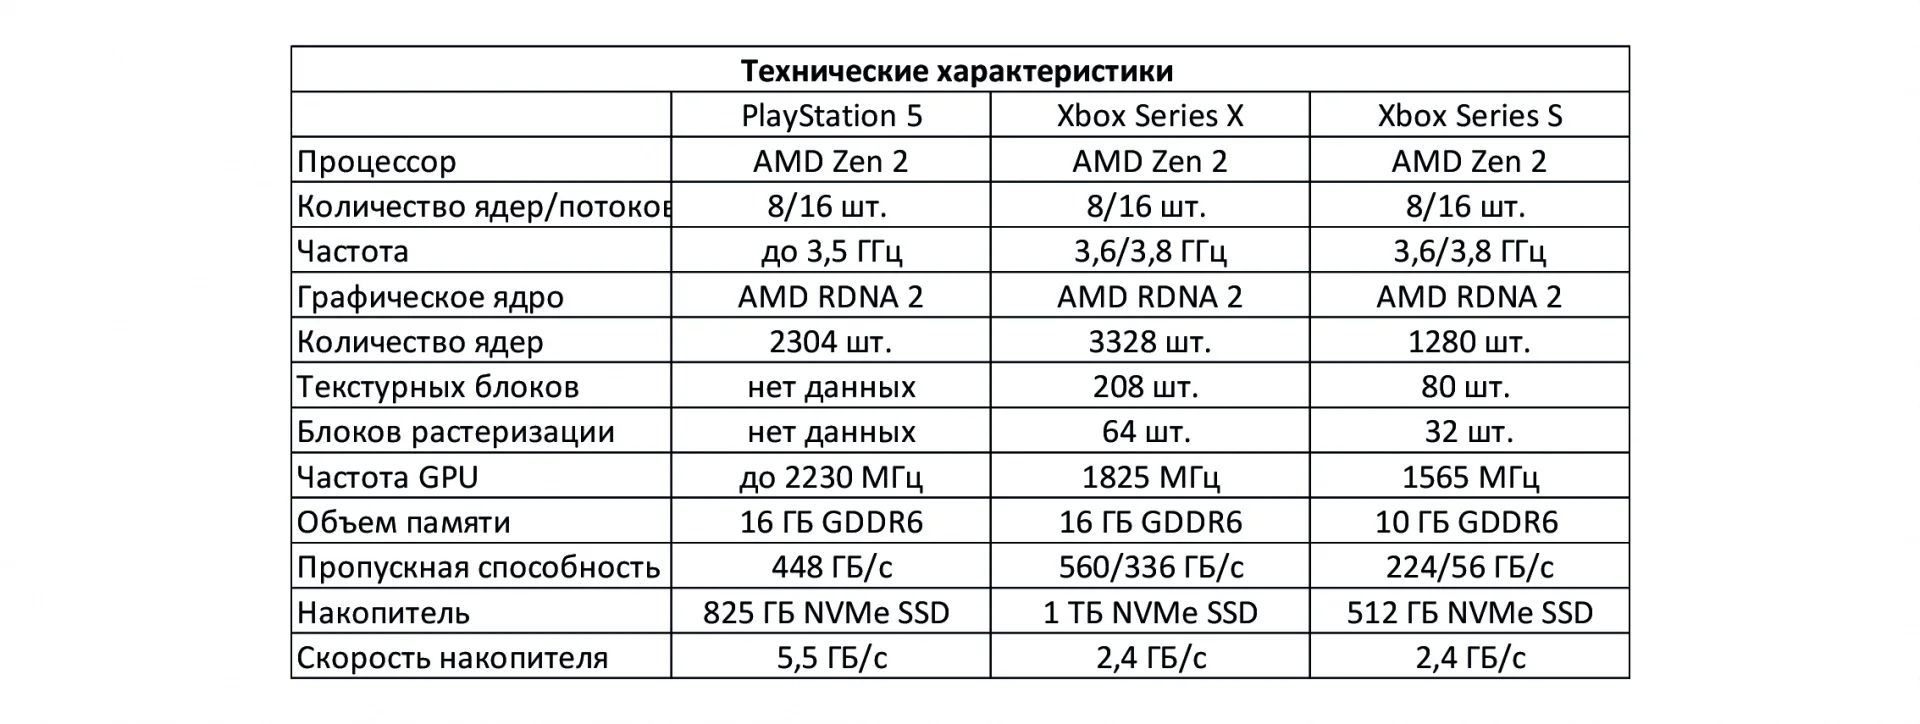 Playstation 4 характеристики железа